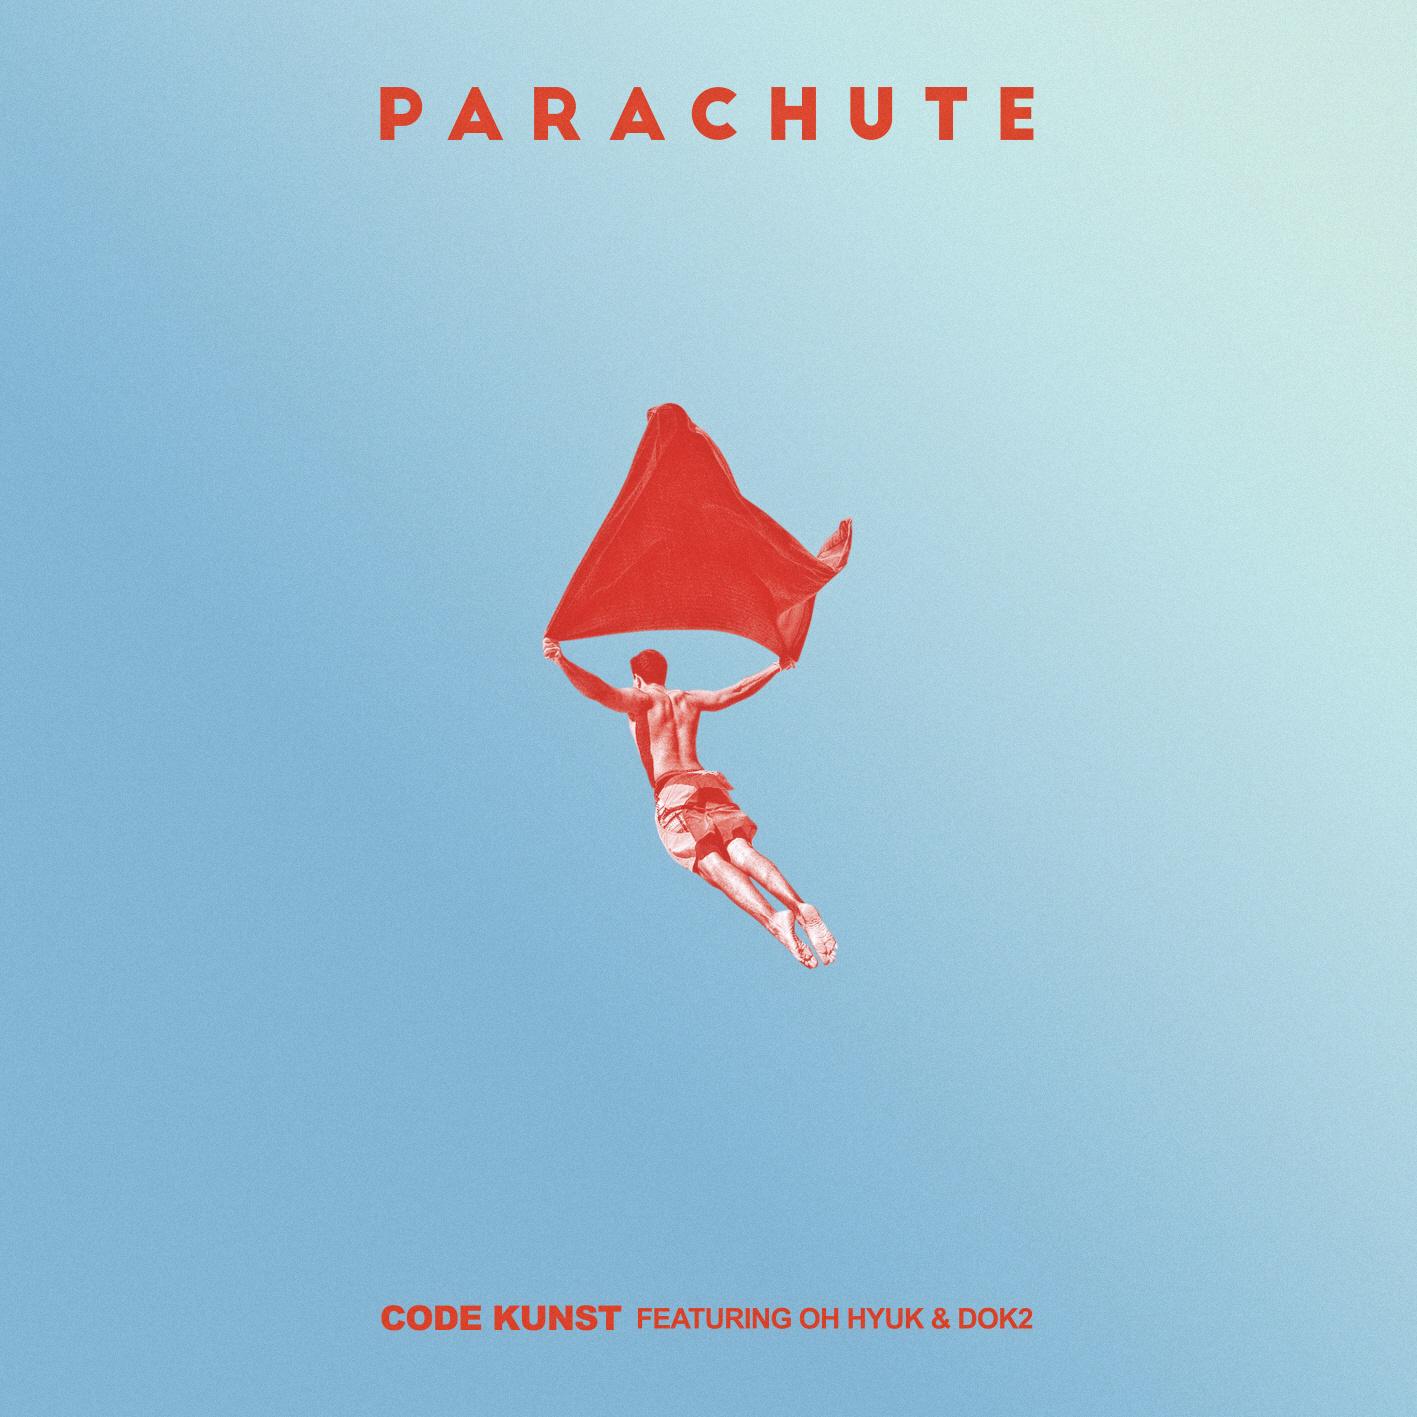 PARACHUTE歌词 歌手Code Kunst / 吴赫 / Dok2-专辑PARACHUTE-单曲《PARACHUTE》LRC歌词下载